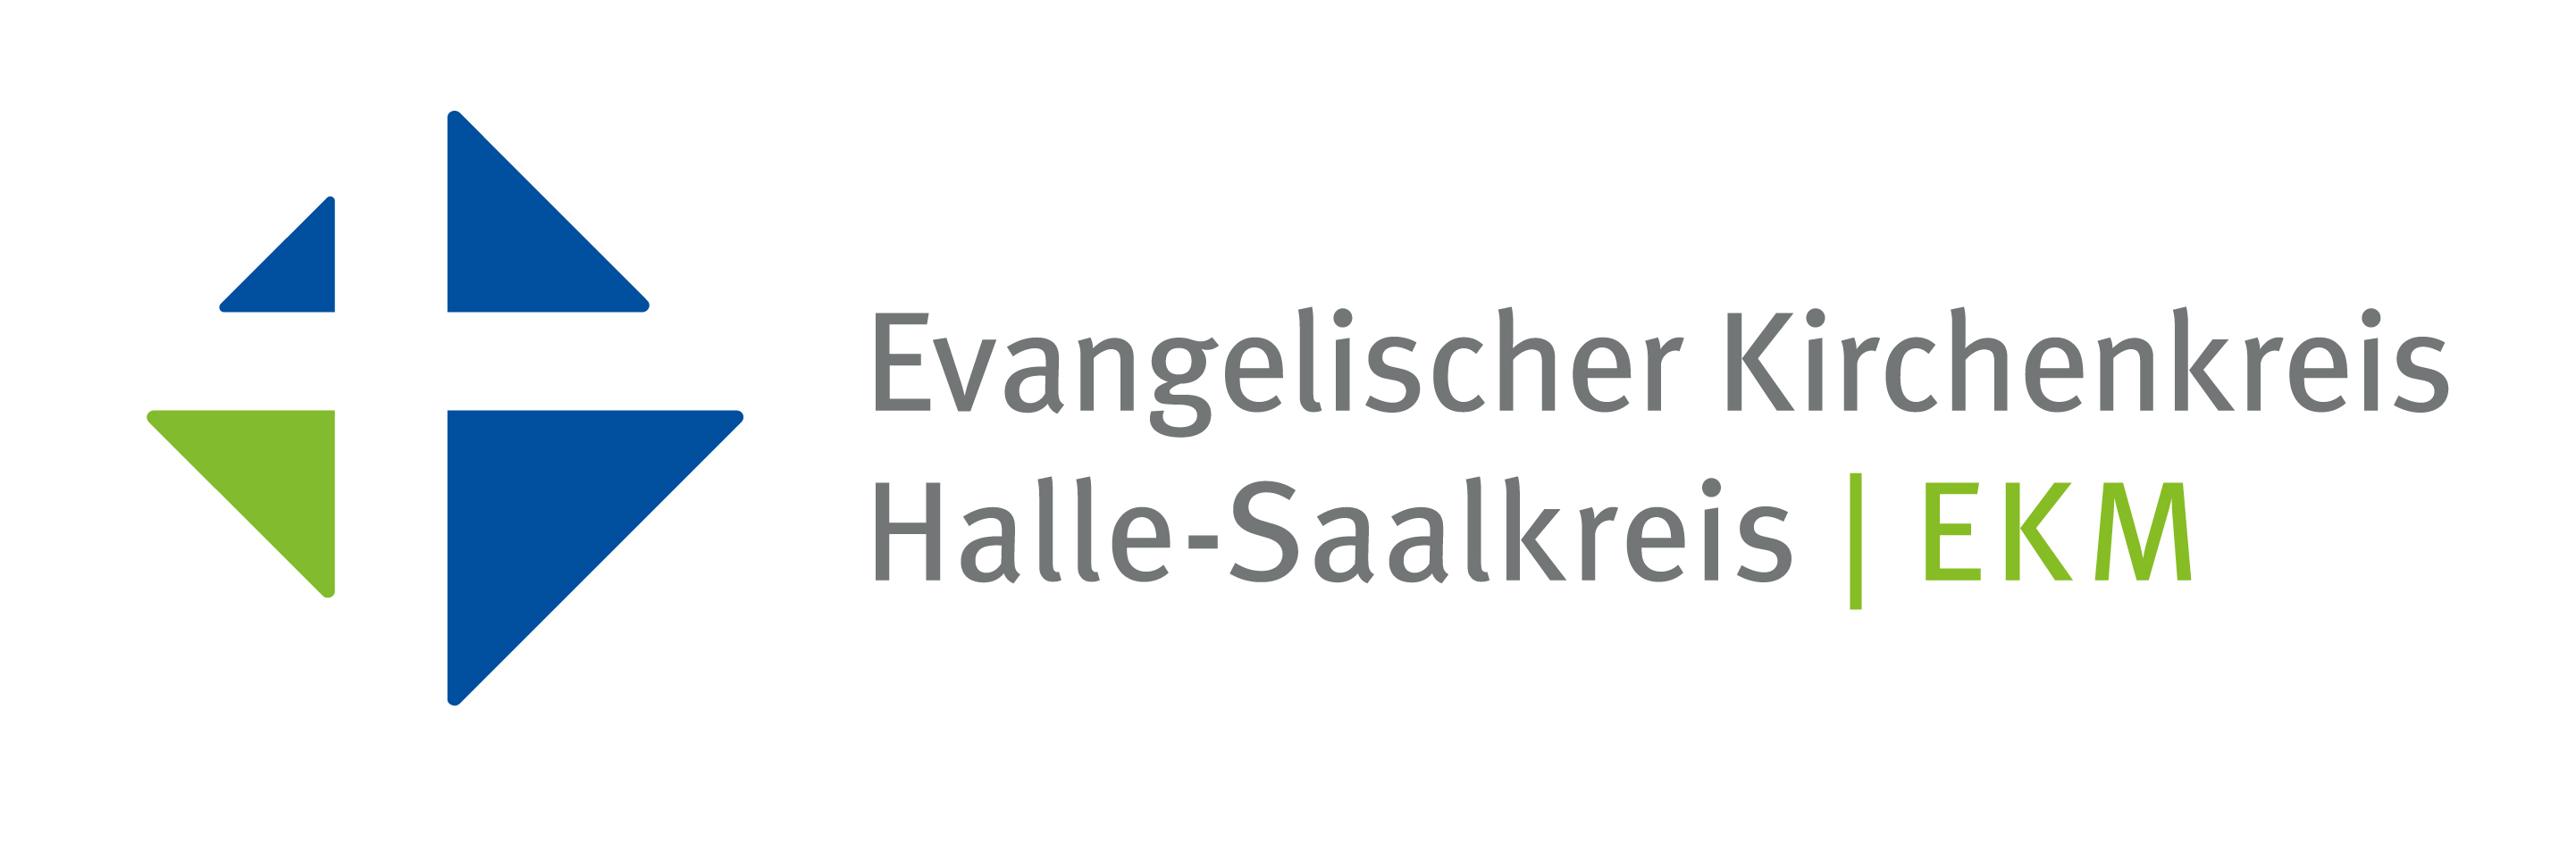 Evangelischer Kirchenkreis Halle-Saalkreis